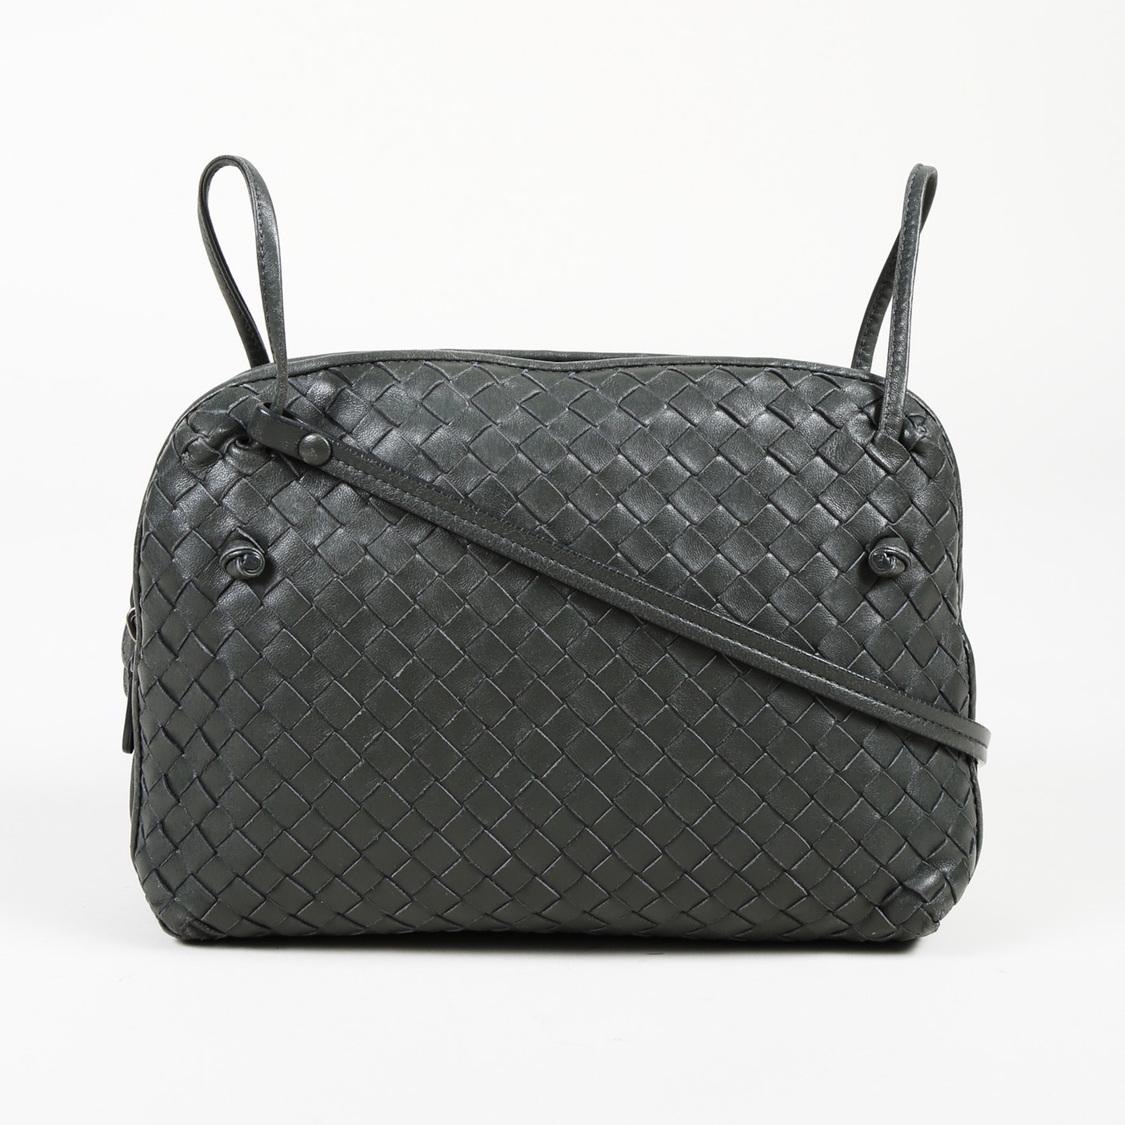 Lyst - Bottega Veneta Intrecciato Leather Crossbody Bag in Gray